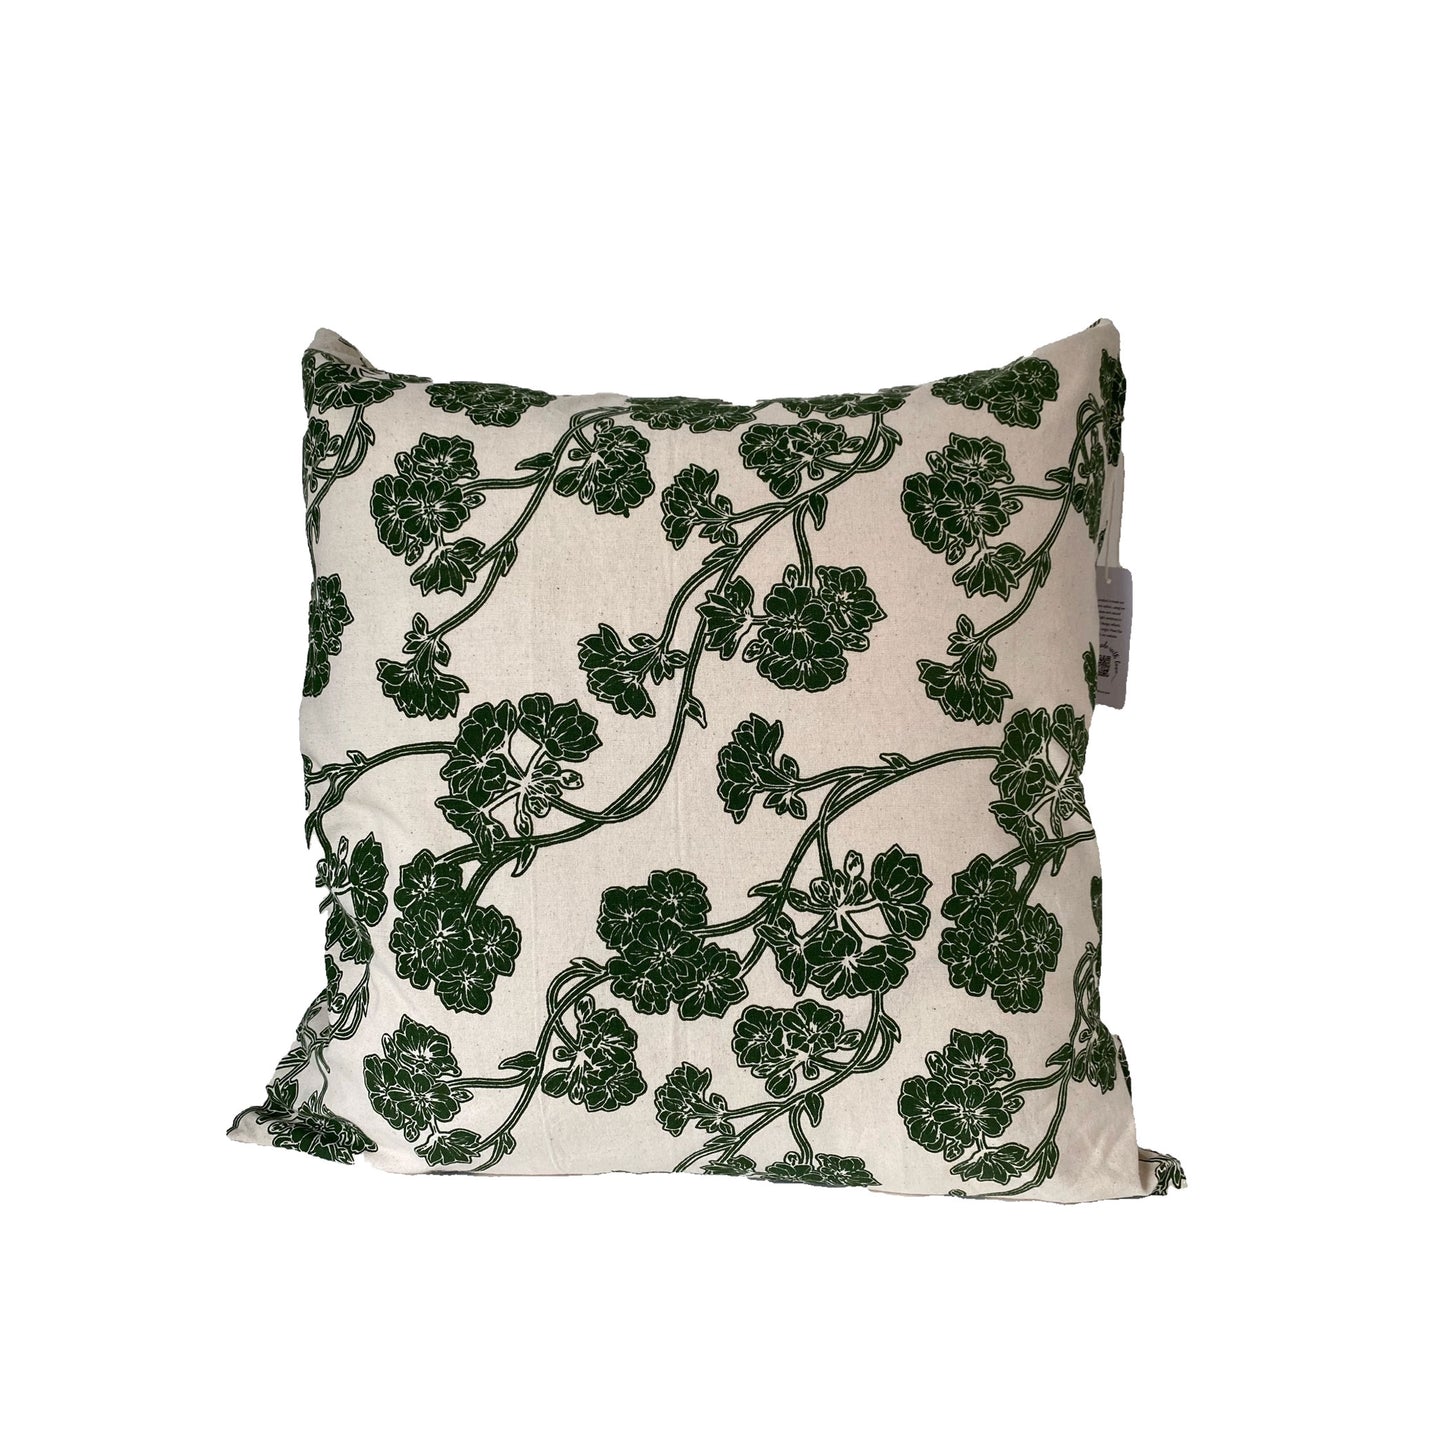 Stella Decor cushion cover design of cherry blossom in size 50x50 cm in color dark green white